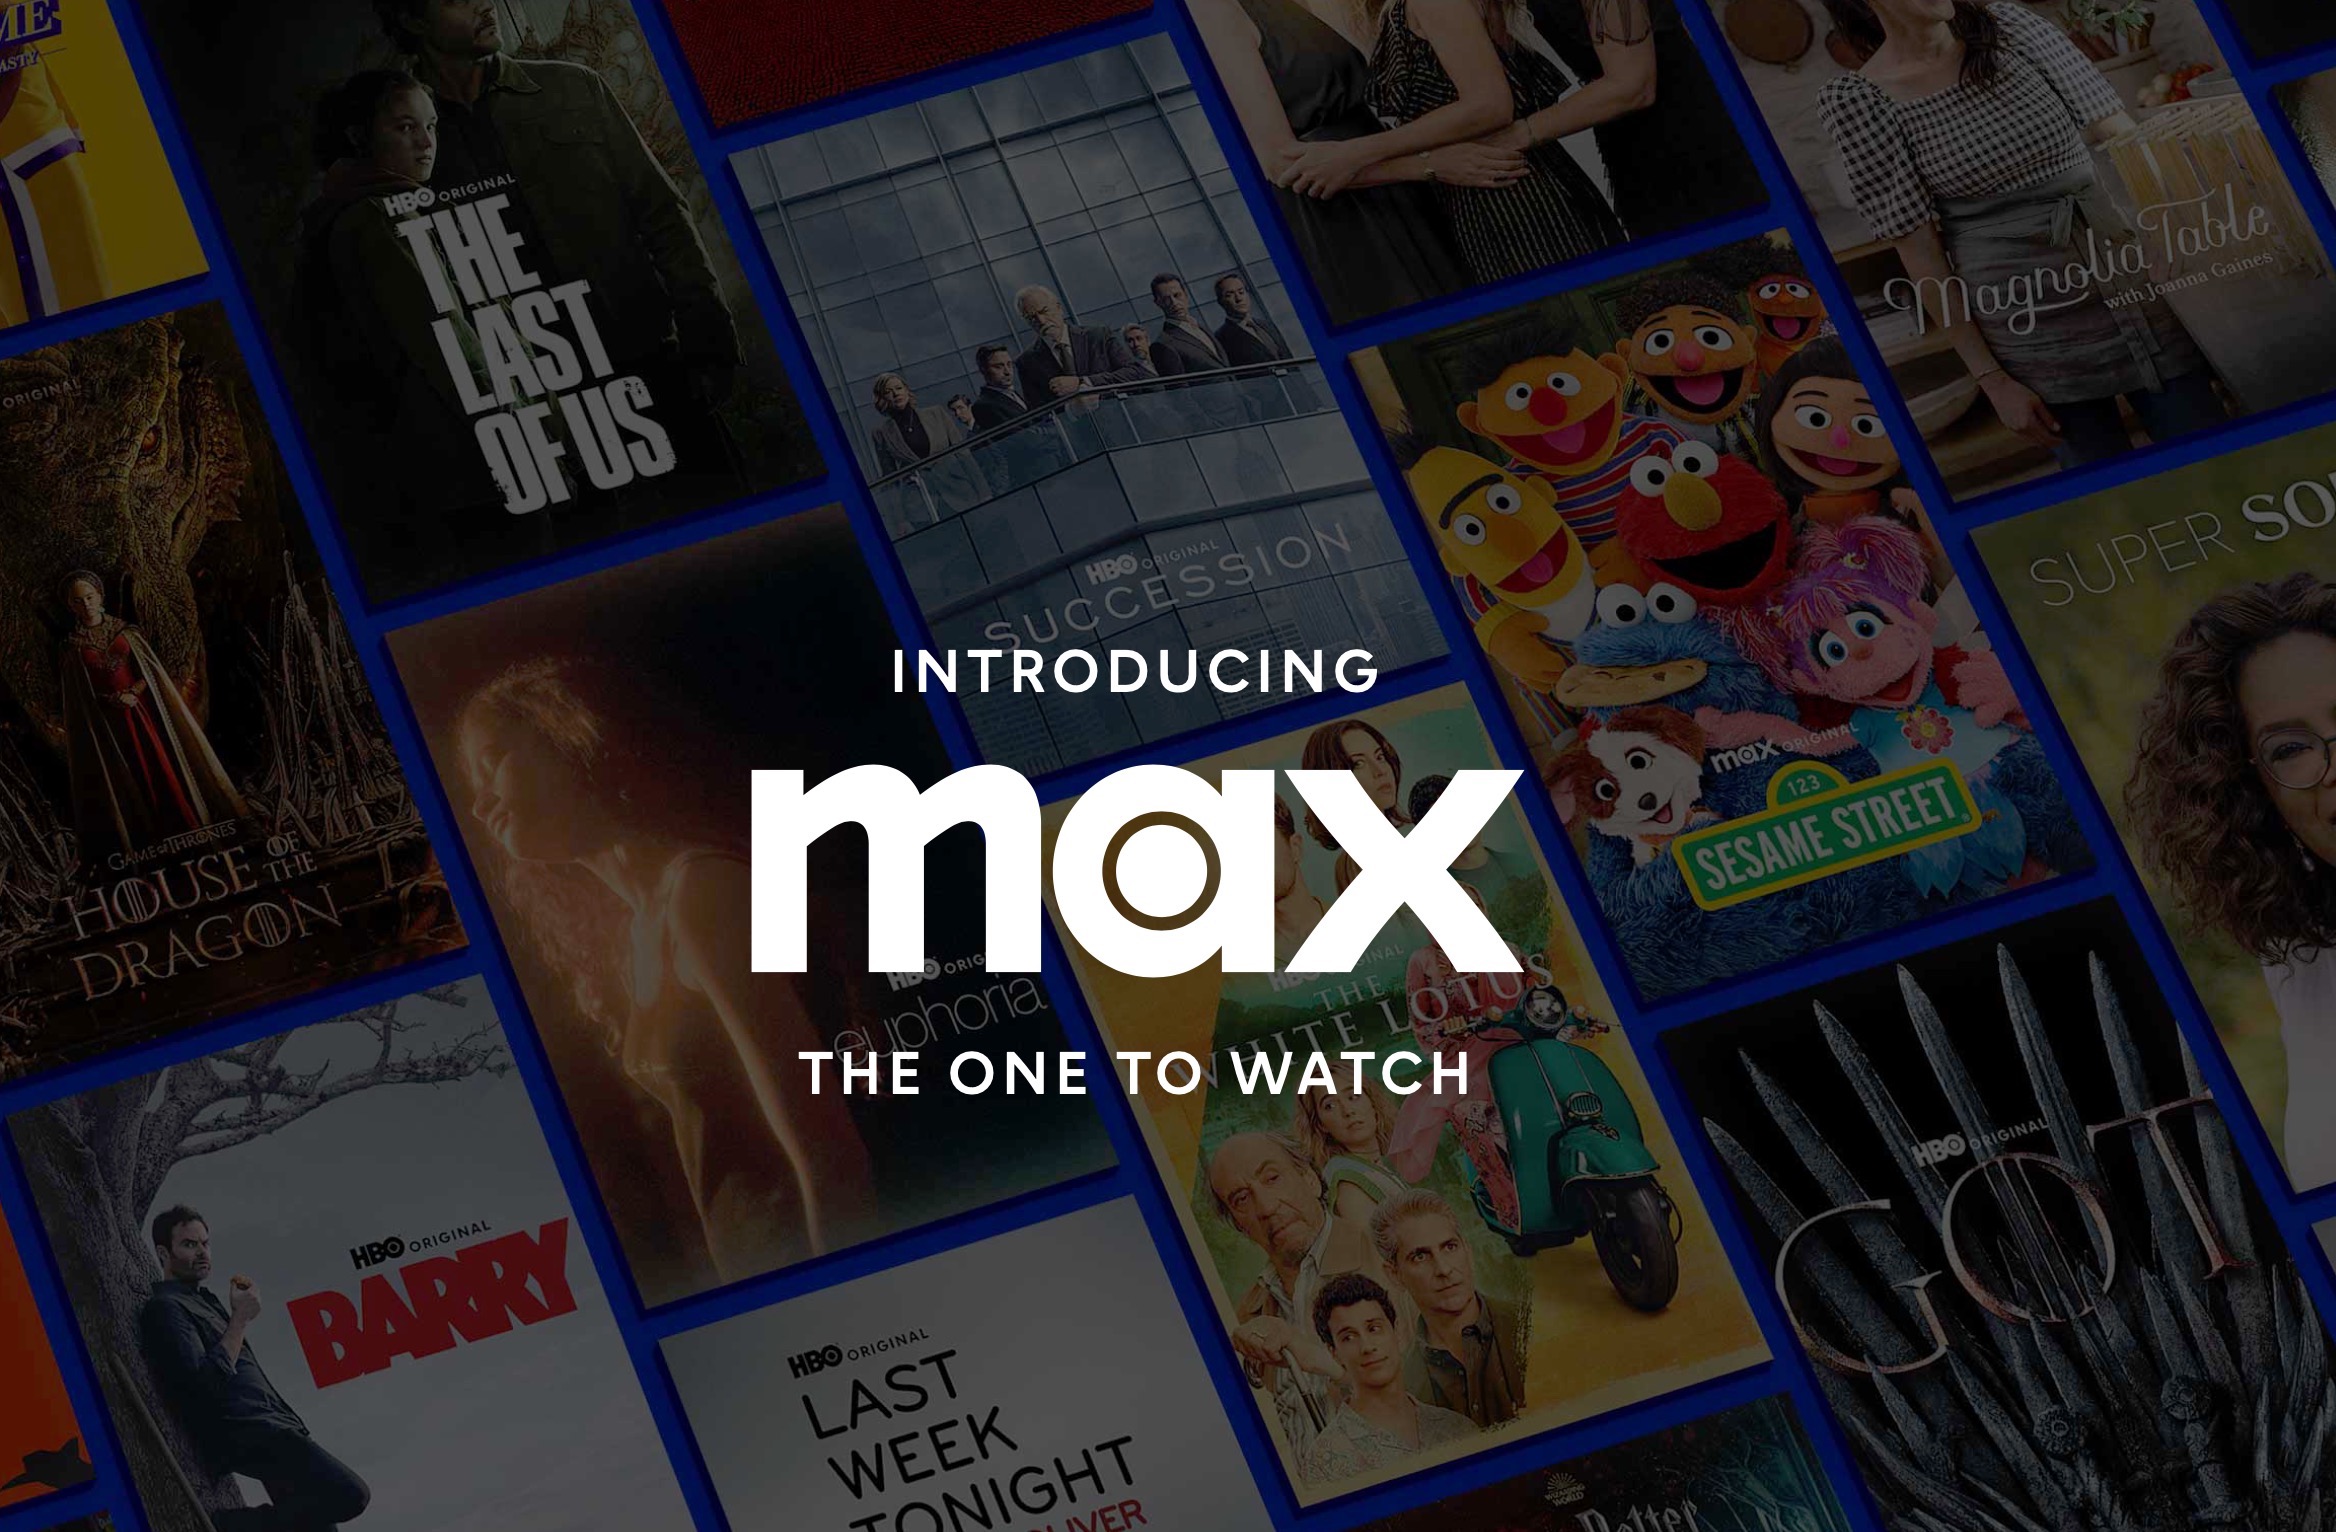 HBO Max: confira os principais lançamentos da semana no streaming